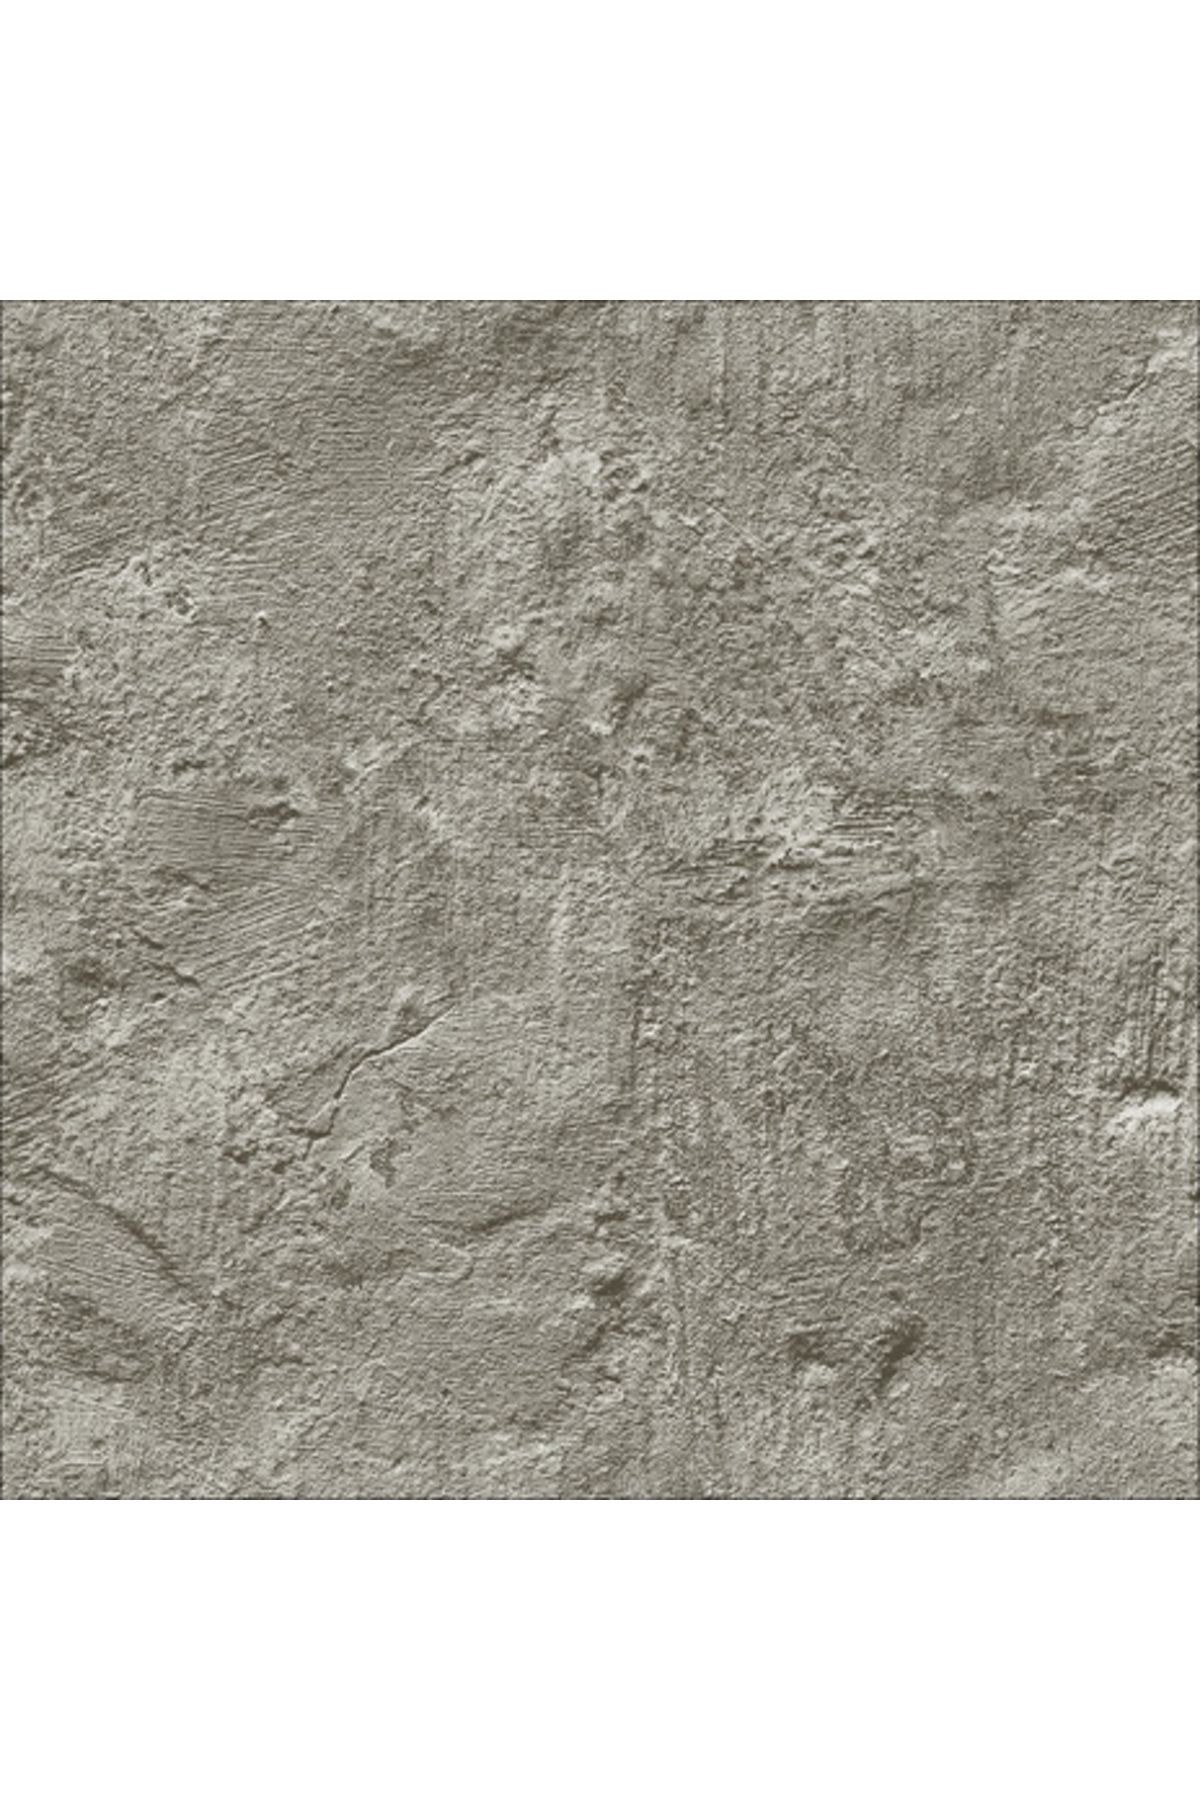 Dekor New Art 1054-B Sıva Görünümlü Duvar Kağıdı